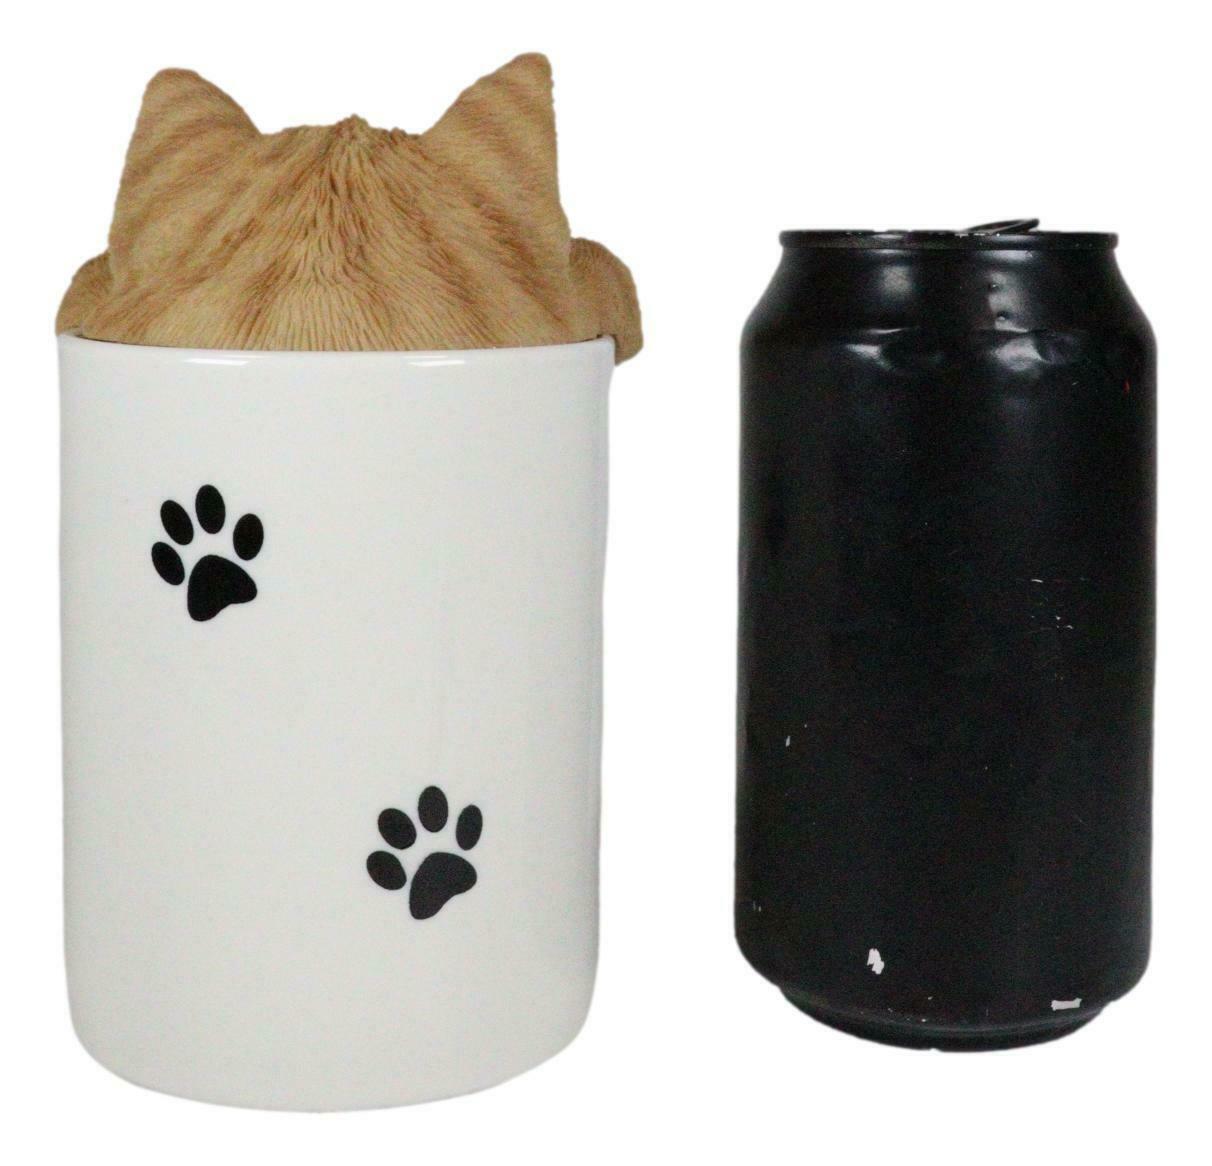 Ceramic Orange Tabby Cat Hiding and Peeking and 50 similar items